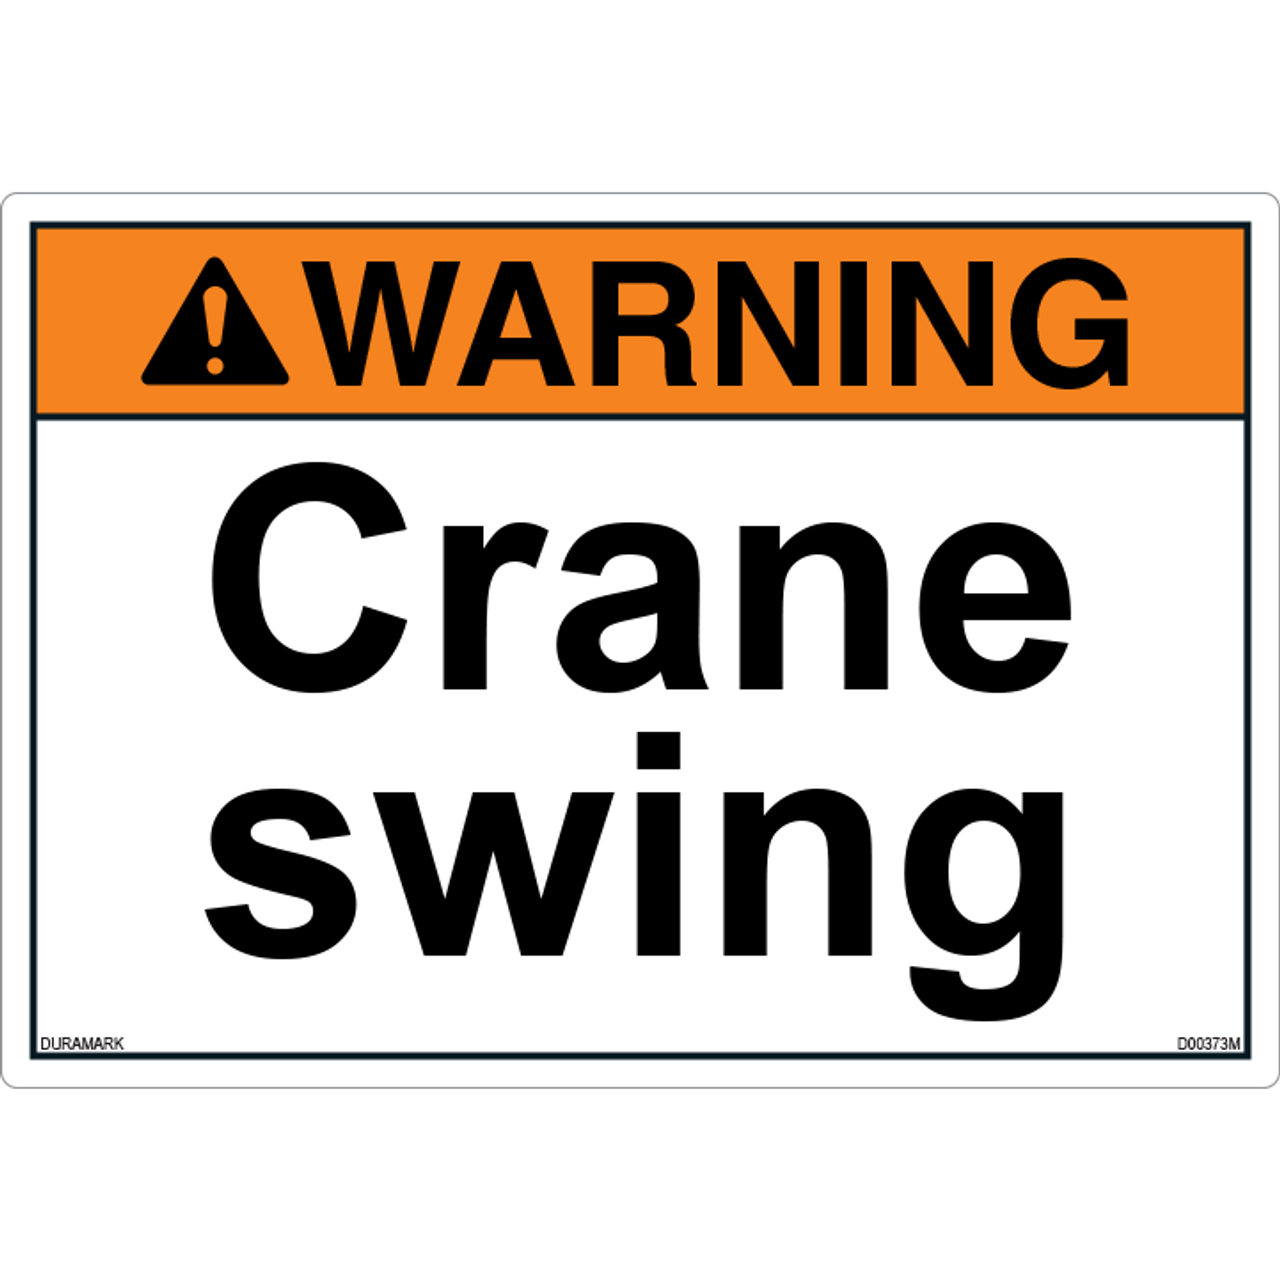 ANSI Safety Label - Warning - Crane Swing